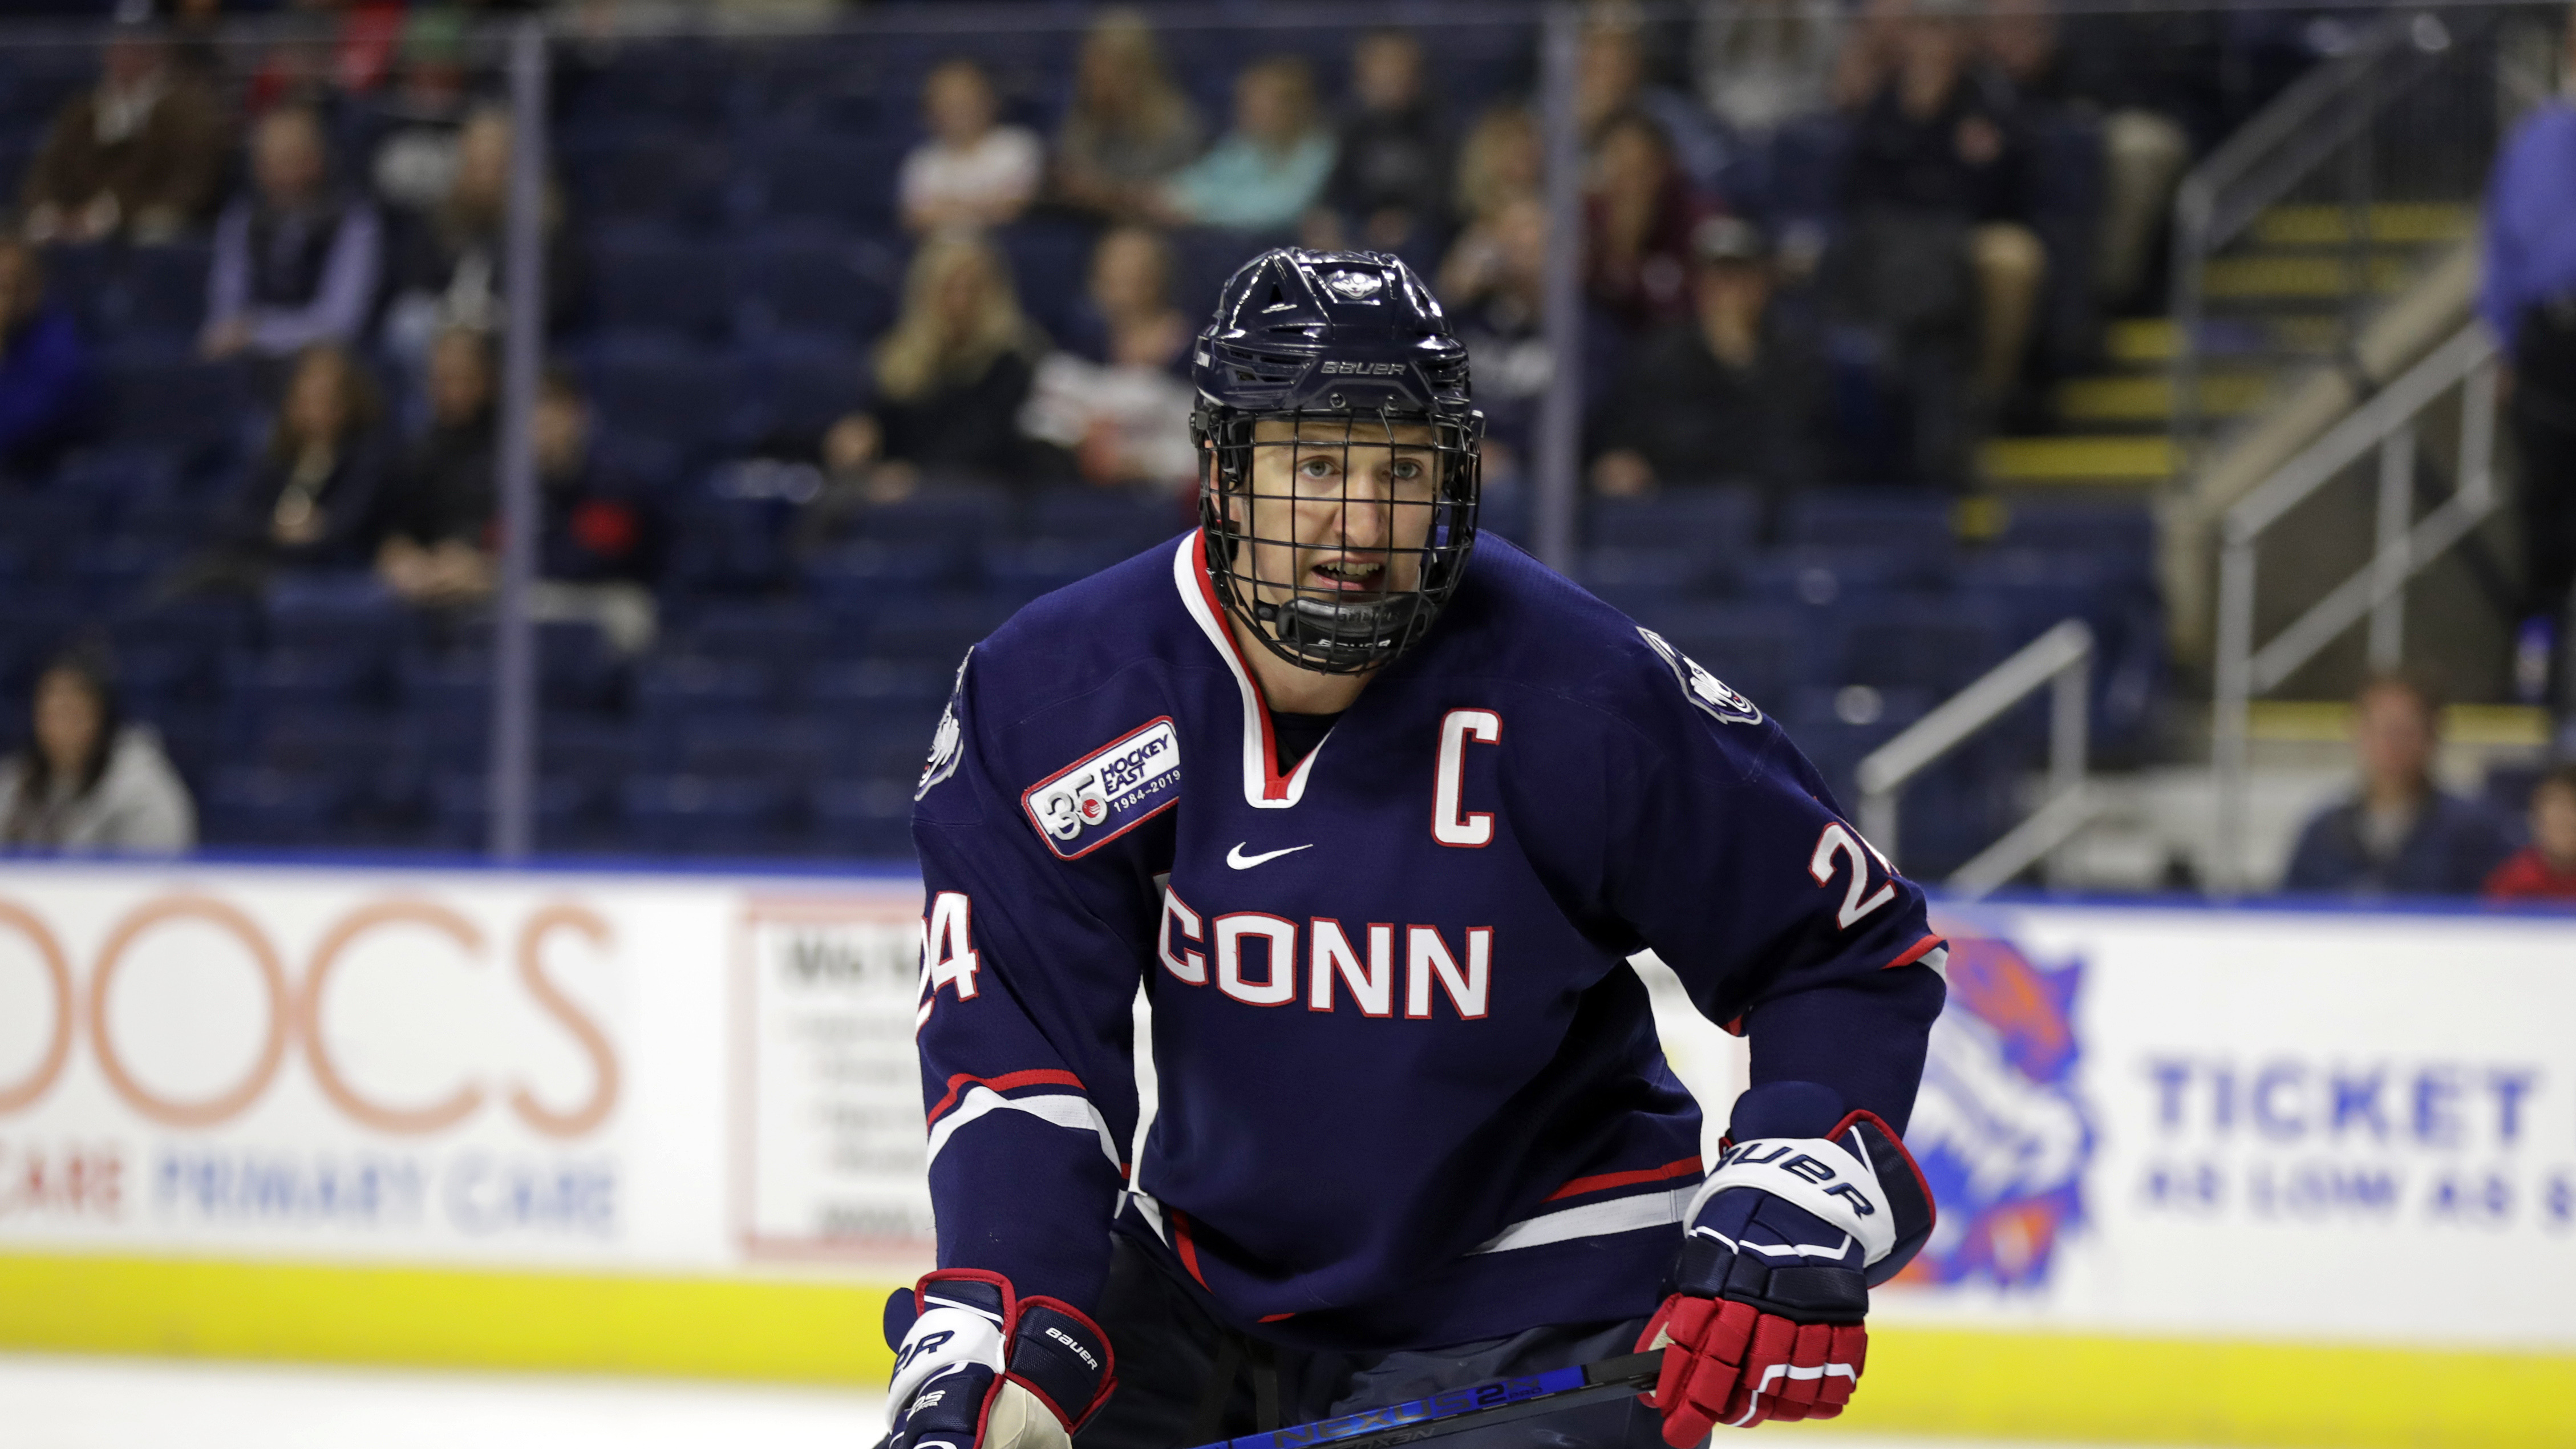 UConn Men's Ice Hockey vs Boston University